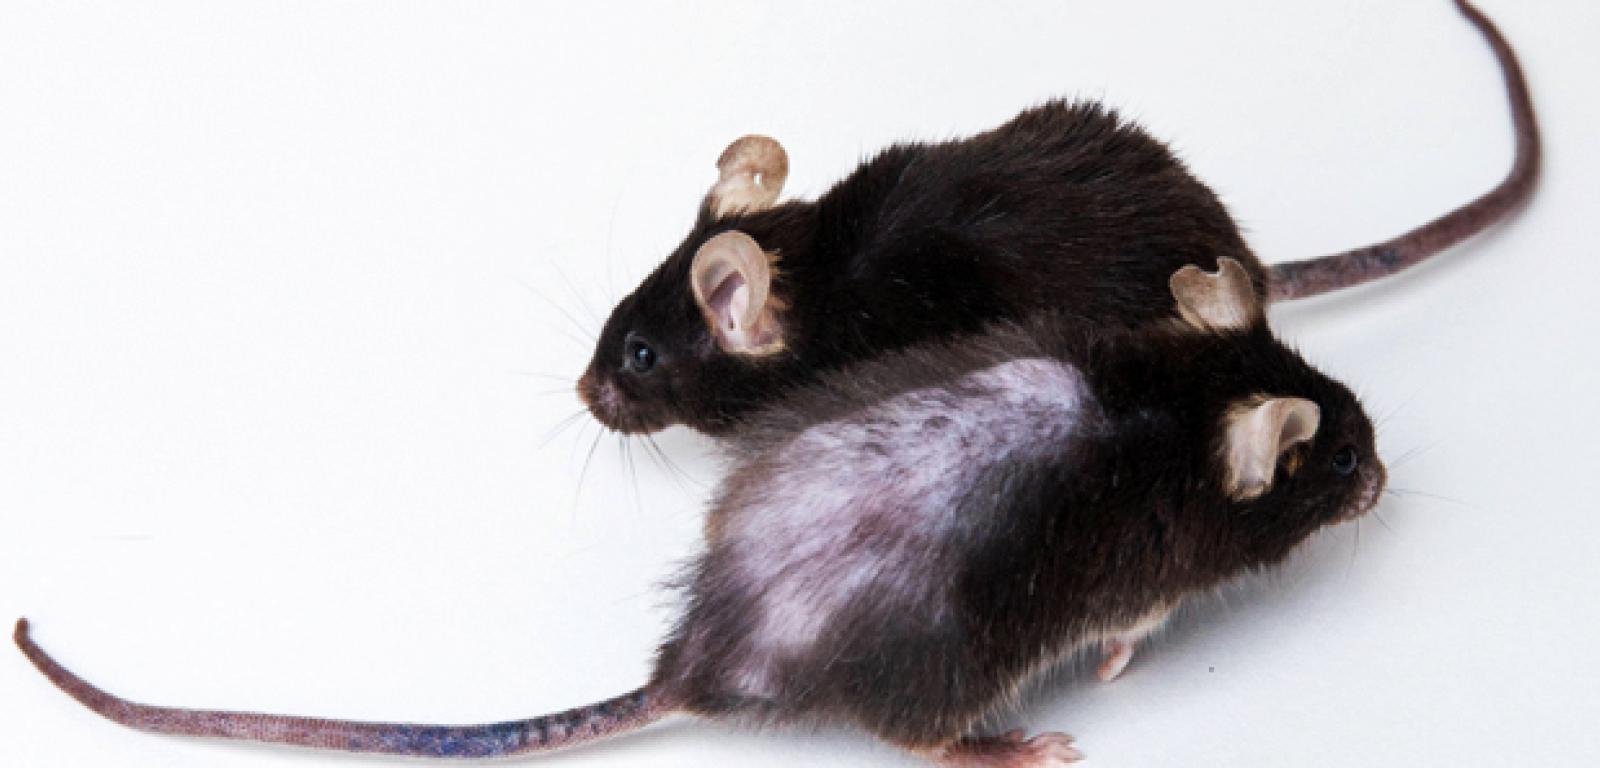 Myszy w wieku 31 miesięcy (co odpowiada mniej więcej 90 latom u myszy). Pierwsza nie otrzymywała leków senolitycznych.